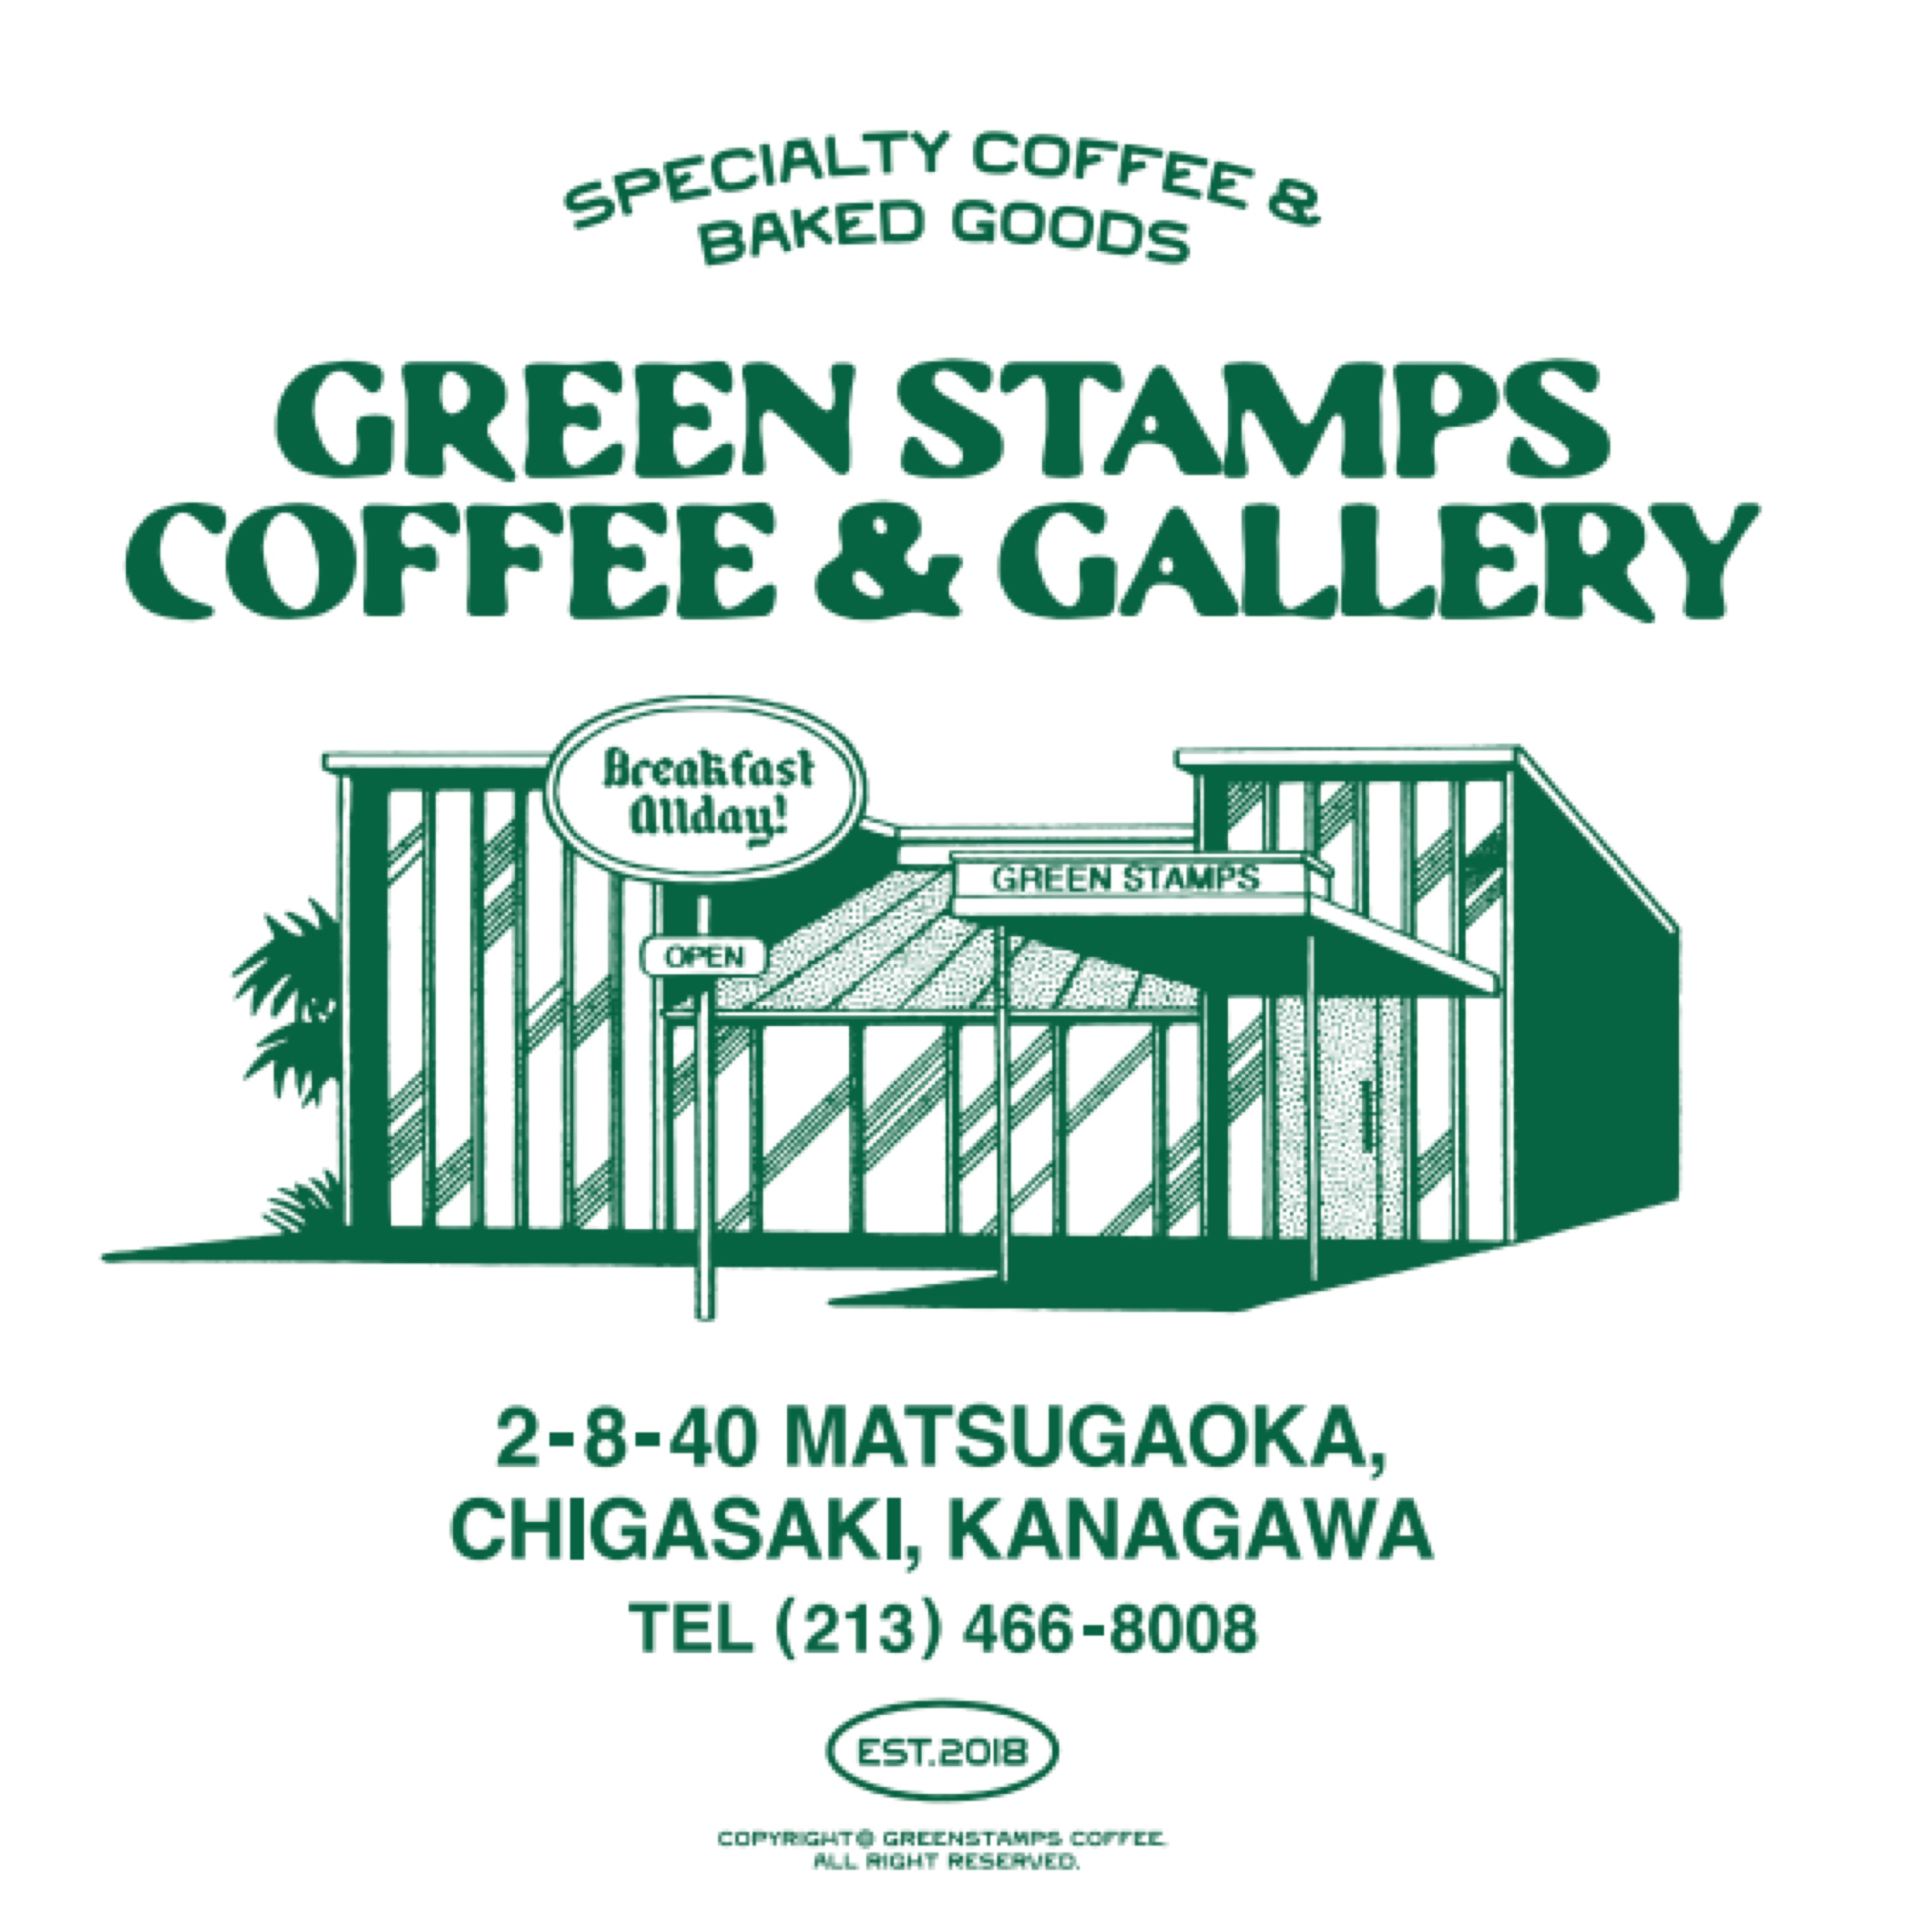 茅ケ崎の新たなコミュニティハブを目指すカフェ・ギャラリー「GREENSTAMPS COFFEE & GALLERY」が誕生